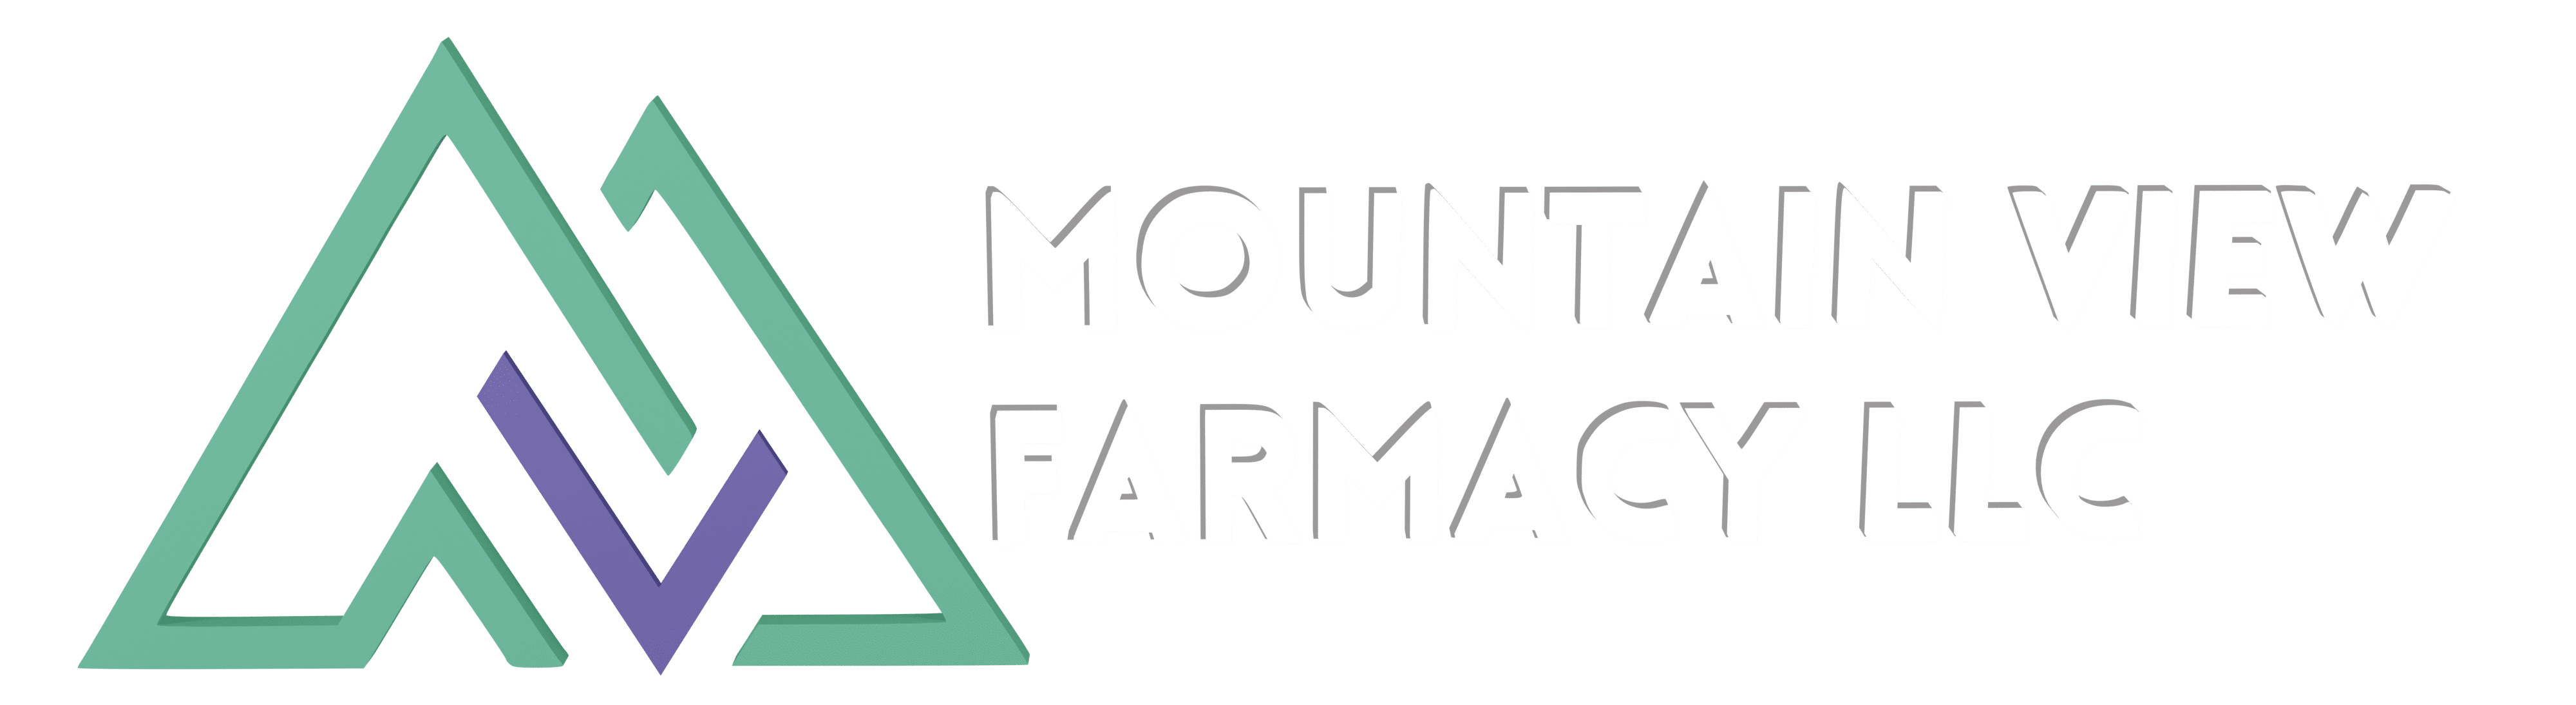 Mountain View Farmacy, LLC